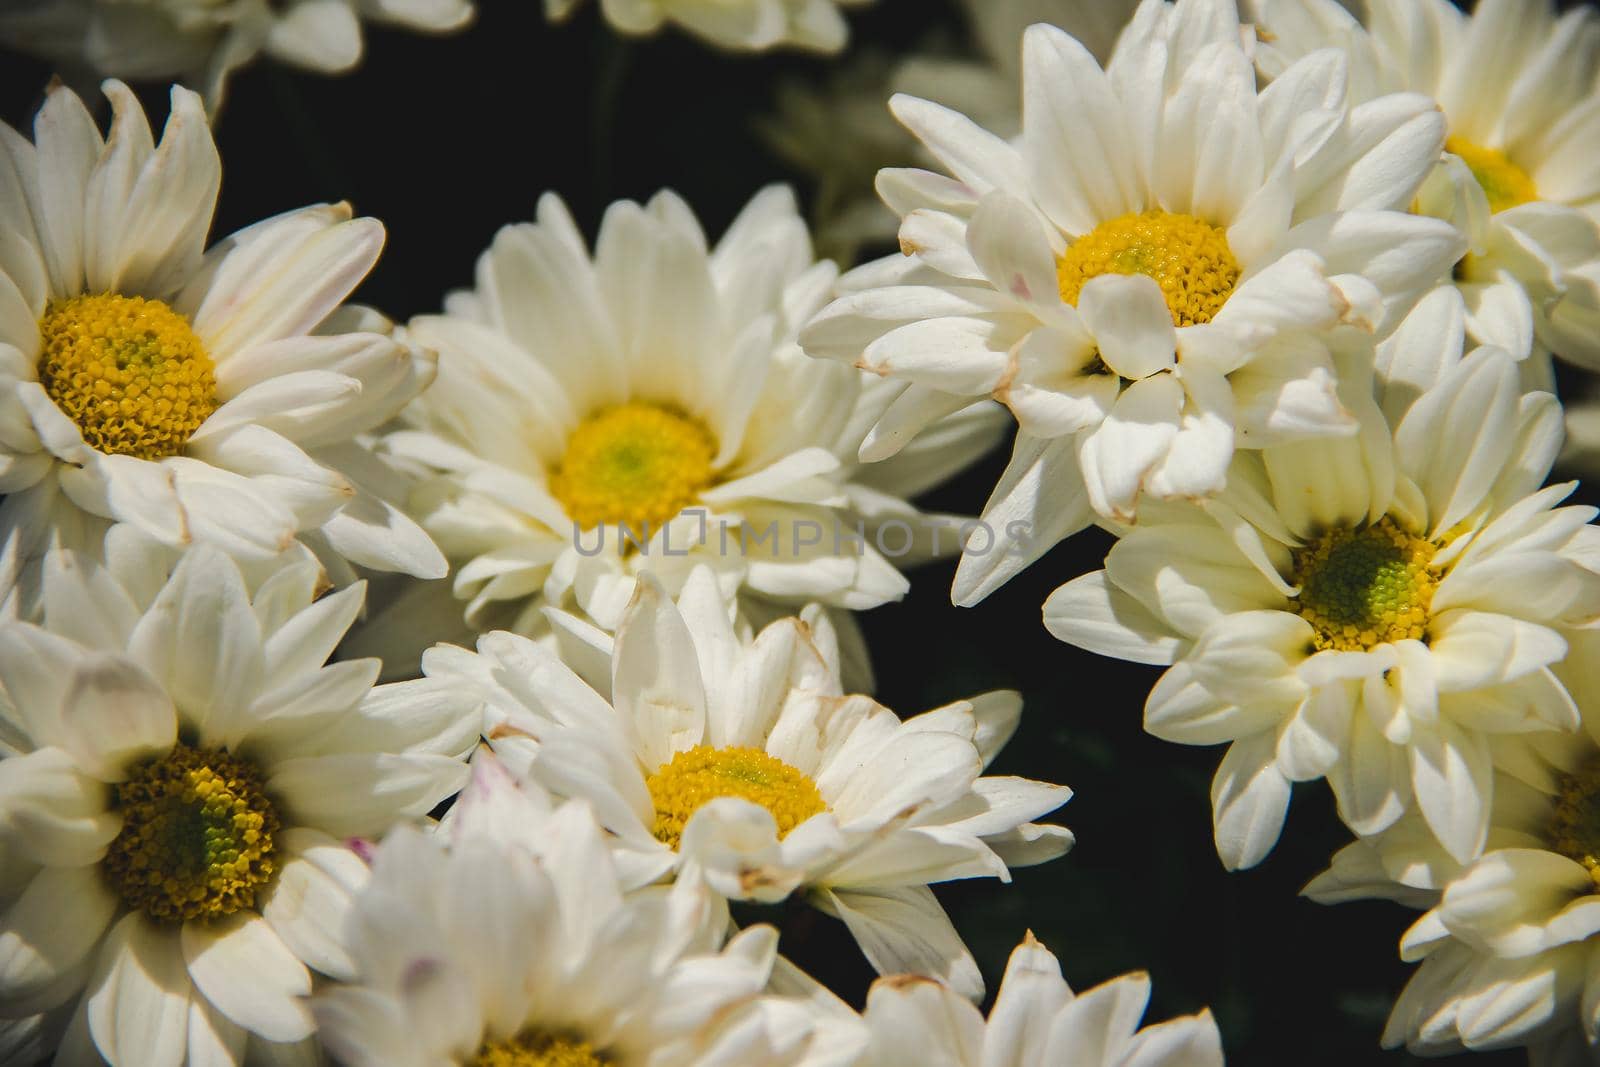 White Chrysanthemum Flower Close Up by Puripatt